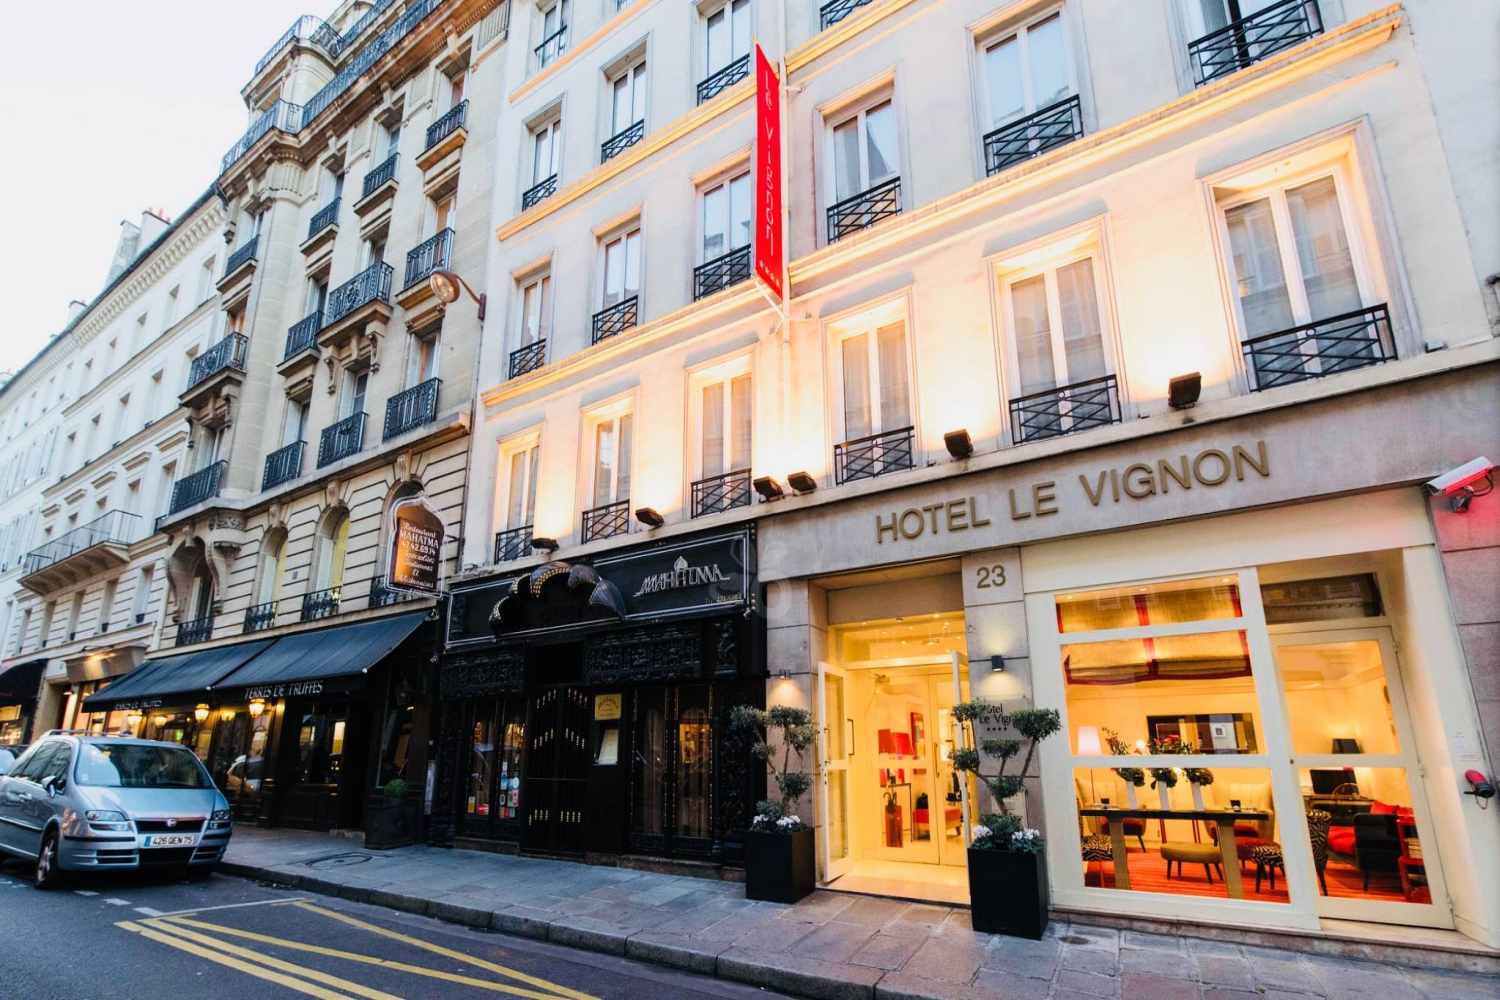 Hotel Le Vignon Paris - France